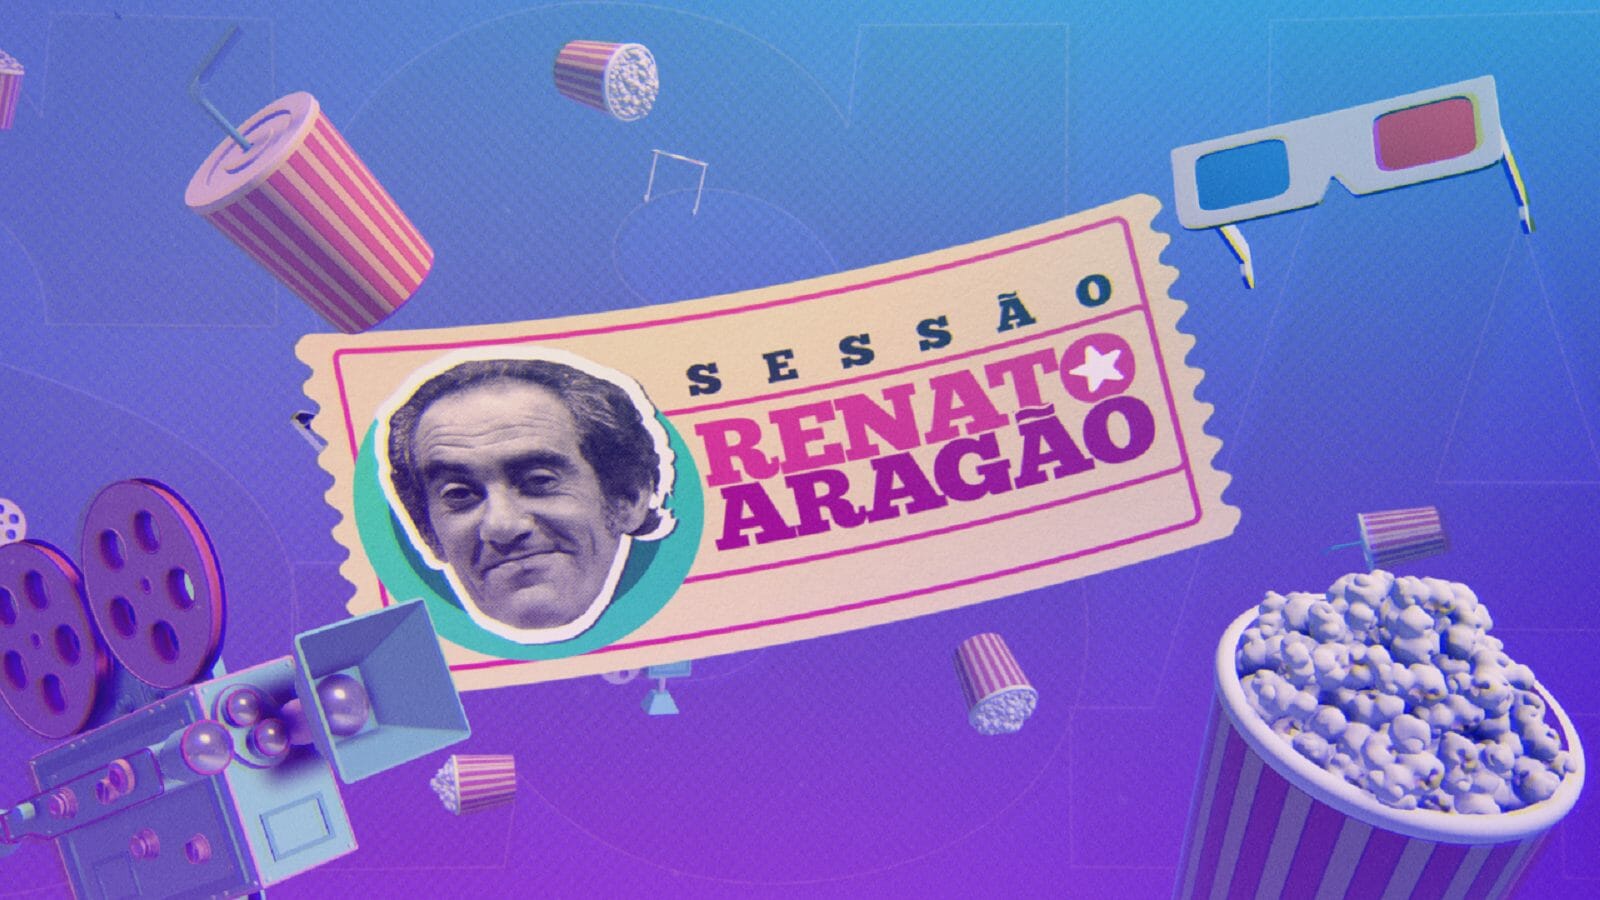 Logotipo da Sessão Renato Aragão, nova faixa de filmes do SBT